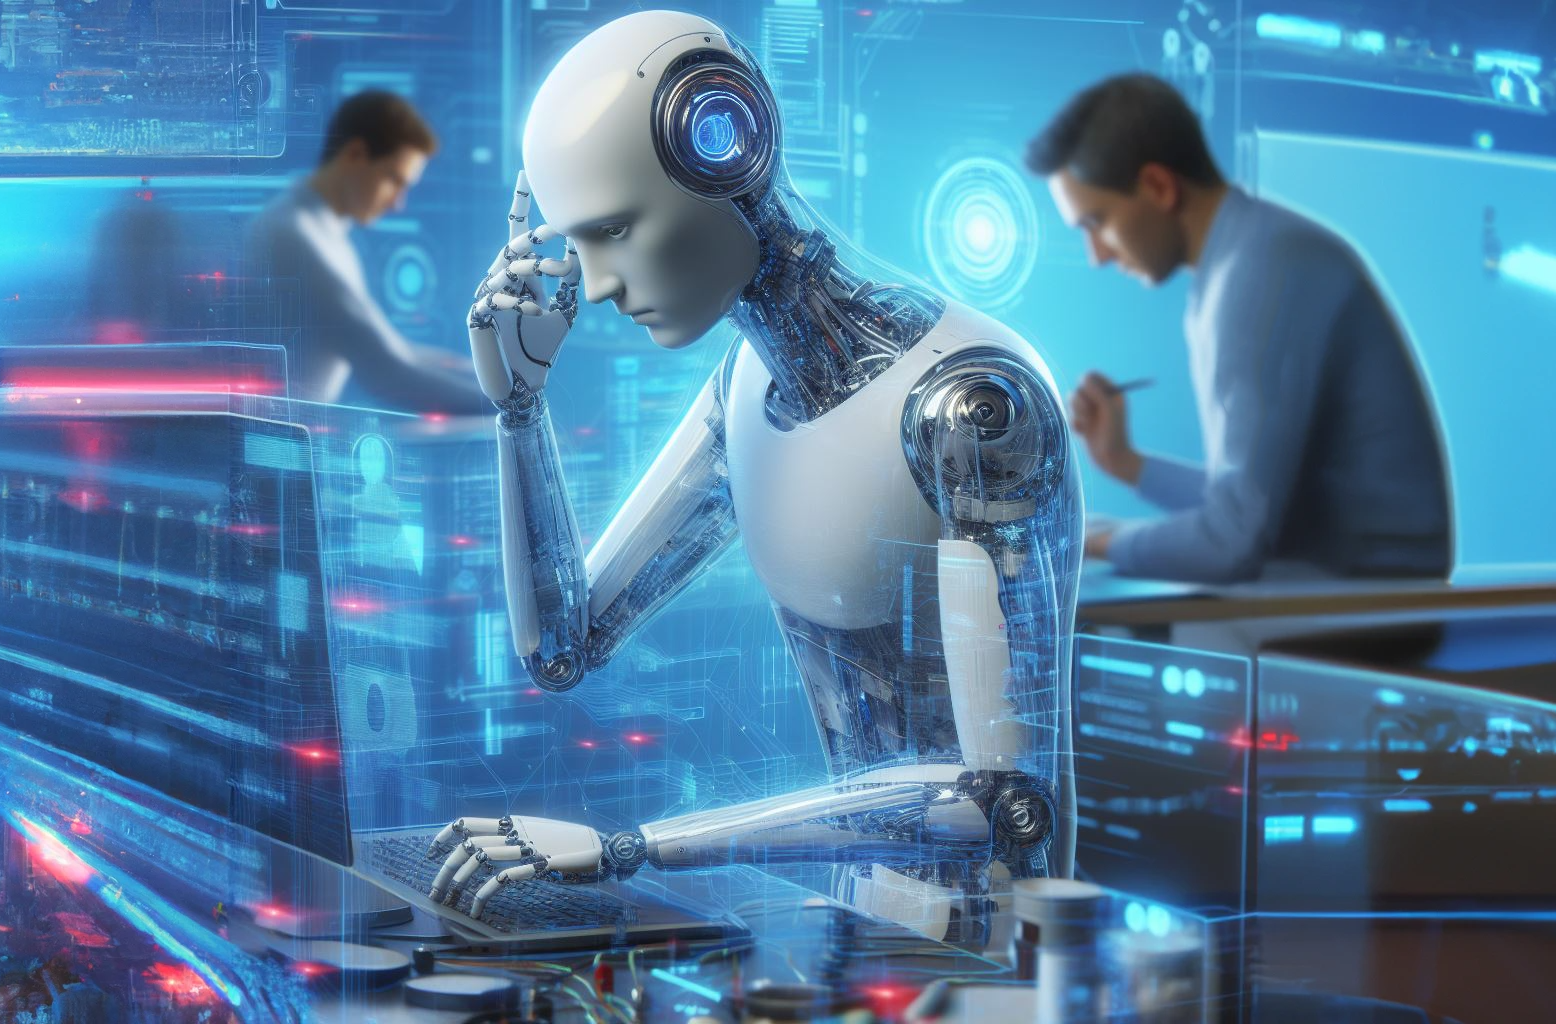 Los desarrolladores de inteligencia artificial deben responder del daño que causan, dicen los "padrinos" de la tecnología